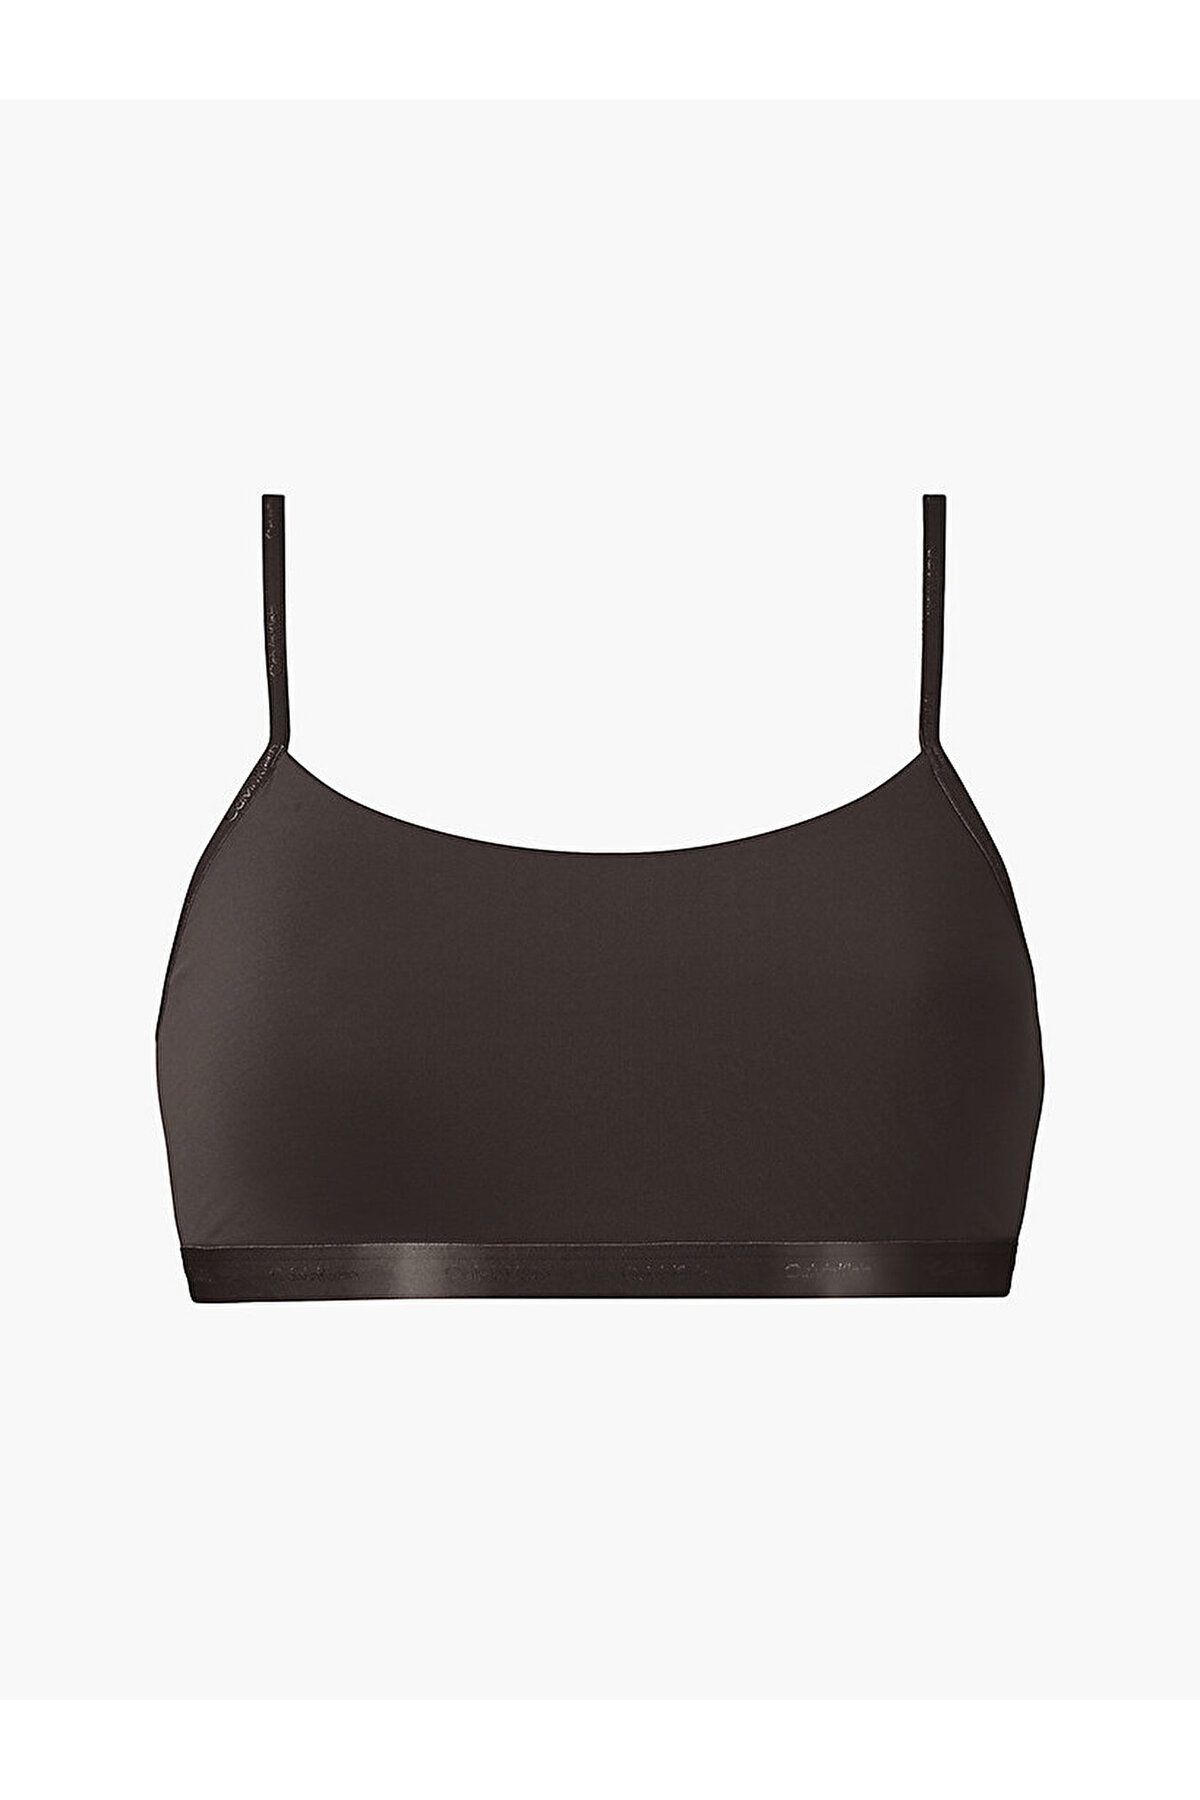 Calvin Klein Kadın Imzalı Elastik Bantlı Siyah Spor Sütyeni 000qf6757e-bck